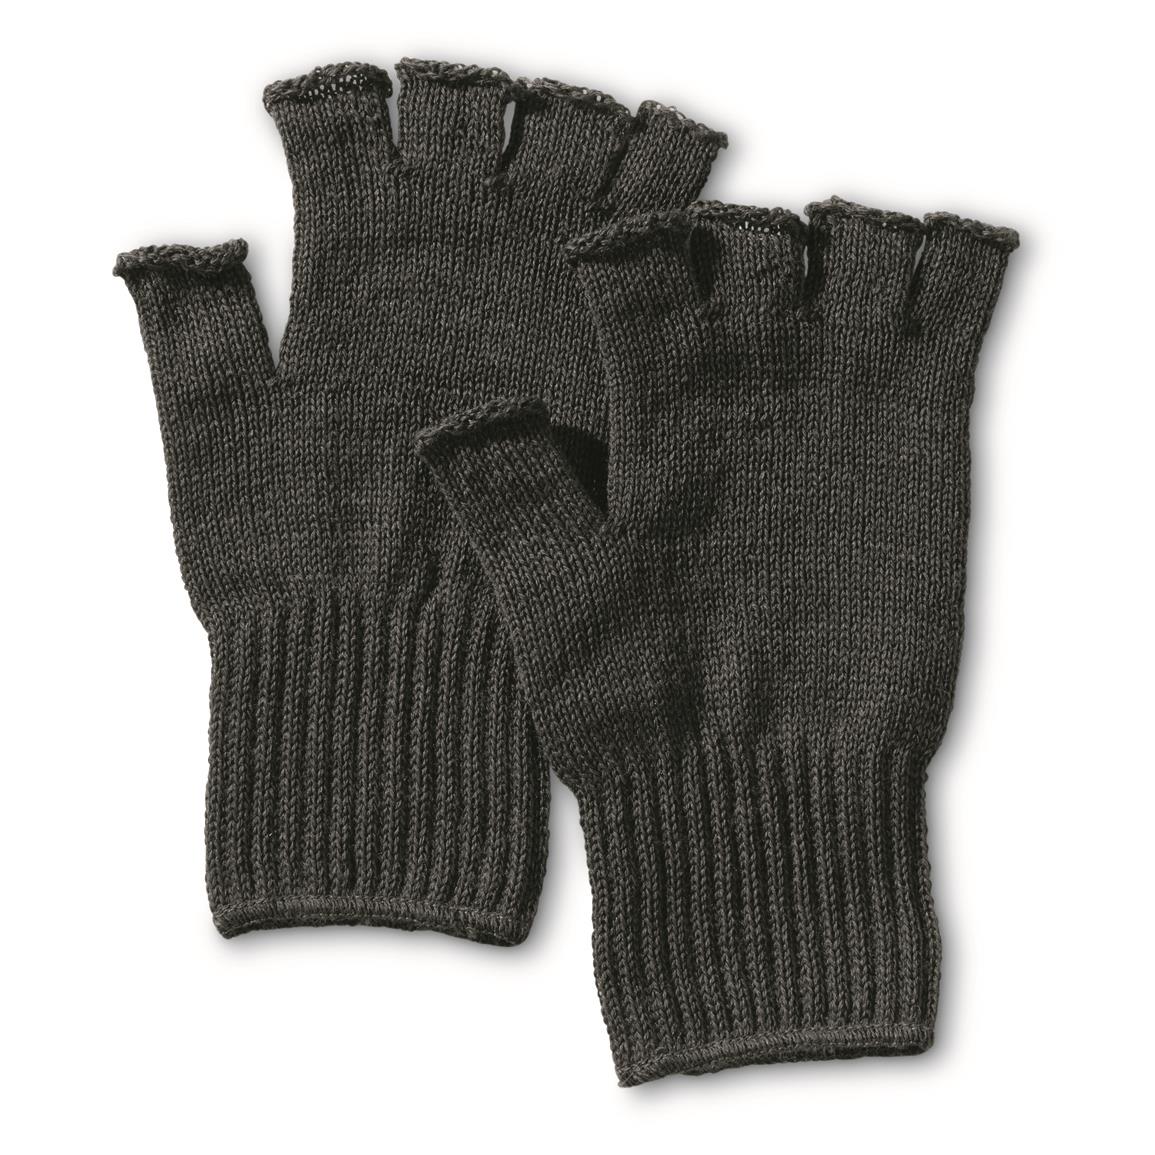 U.S. Military Surplus Wool Fingerless Gloves, 2 Pack, New, Black